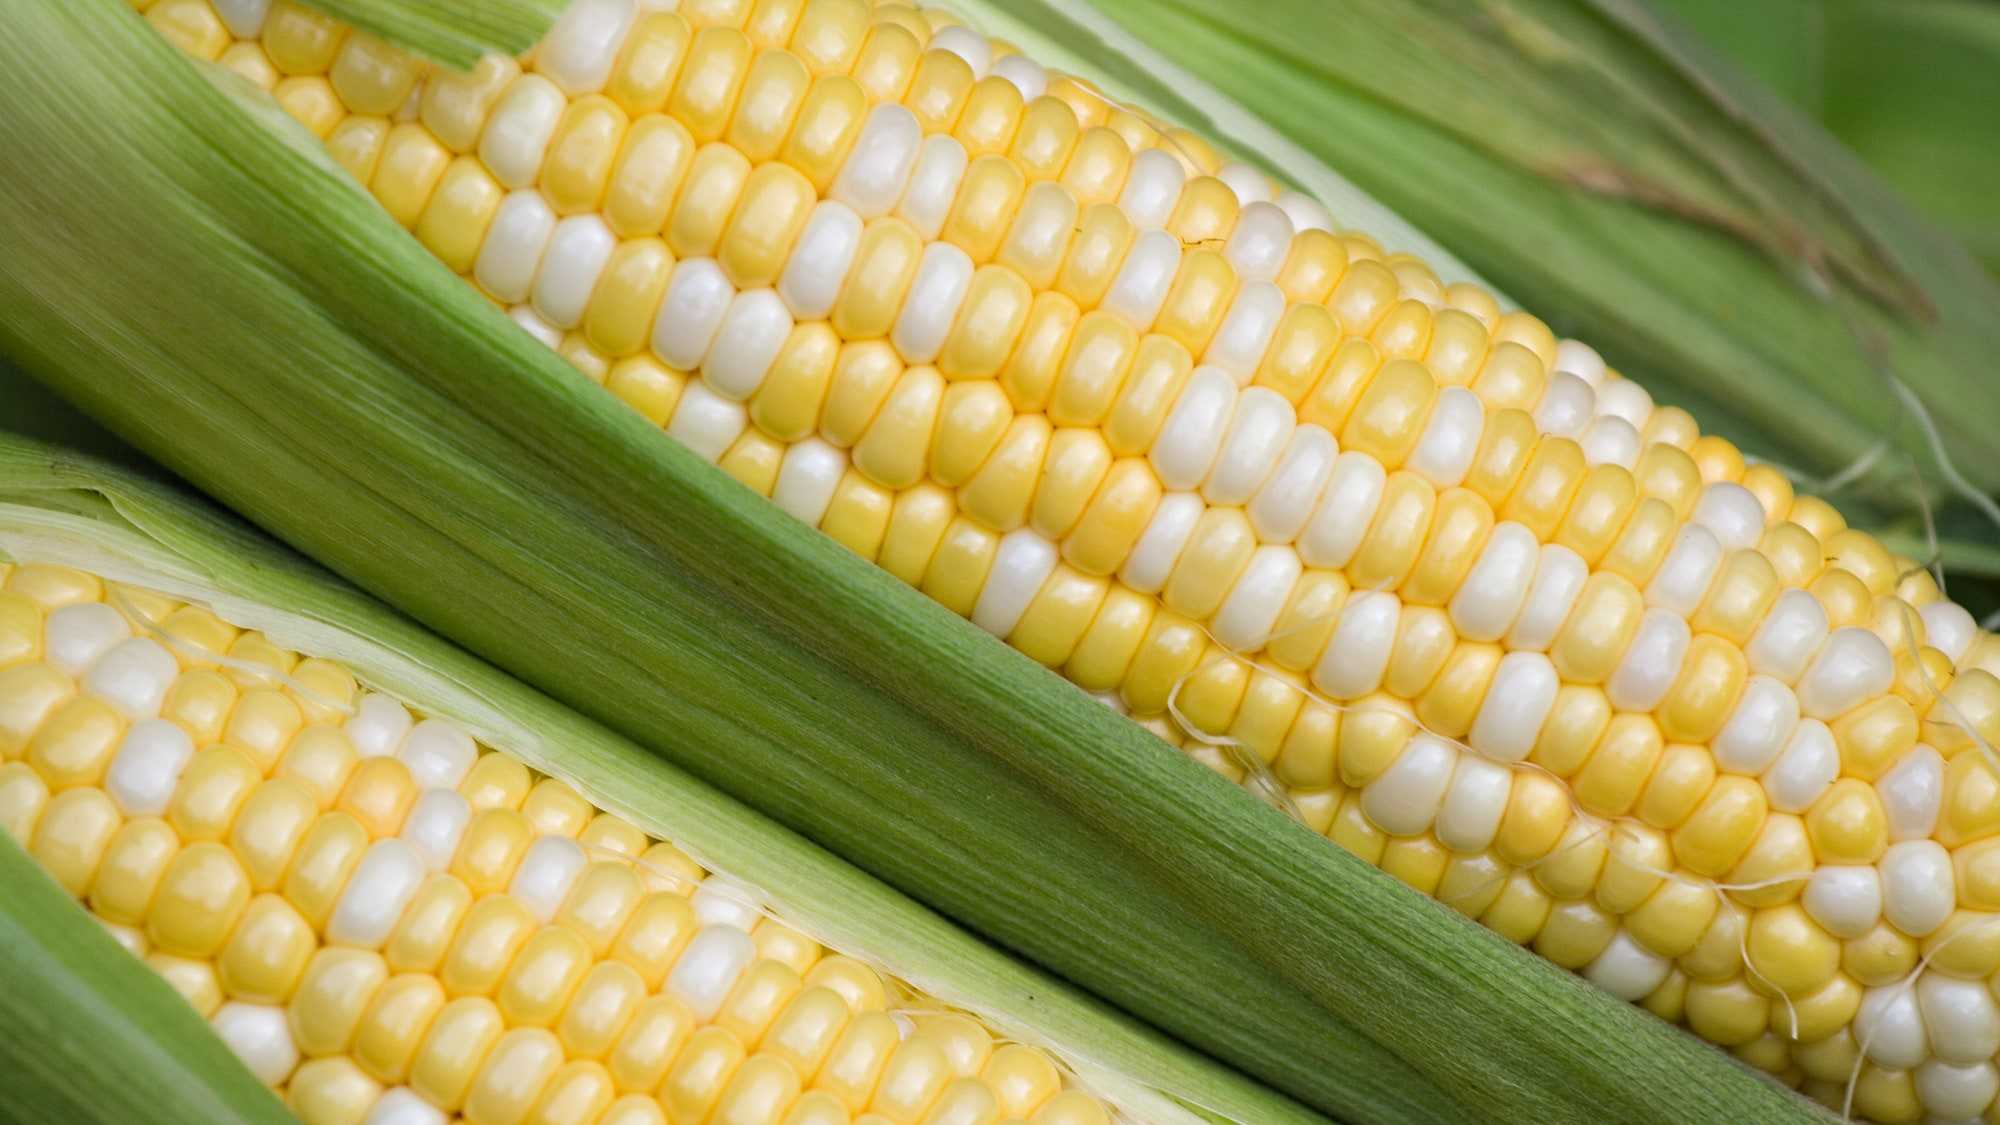 Война против ГМО имеет, скорее, экономические корни